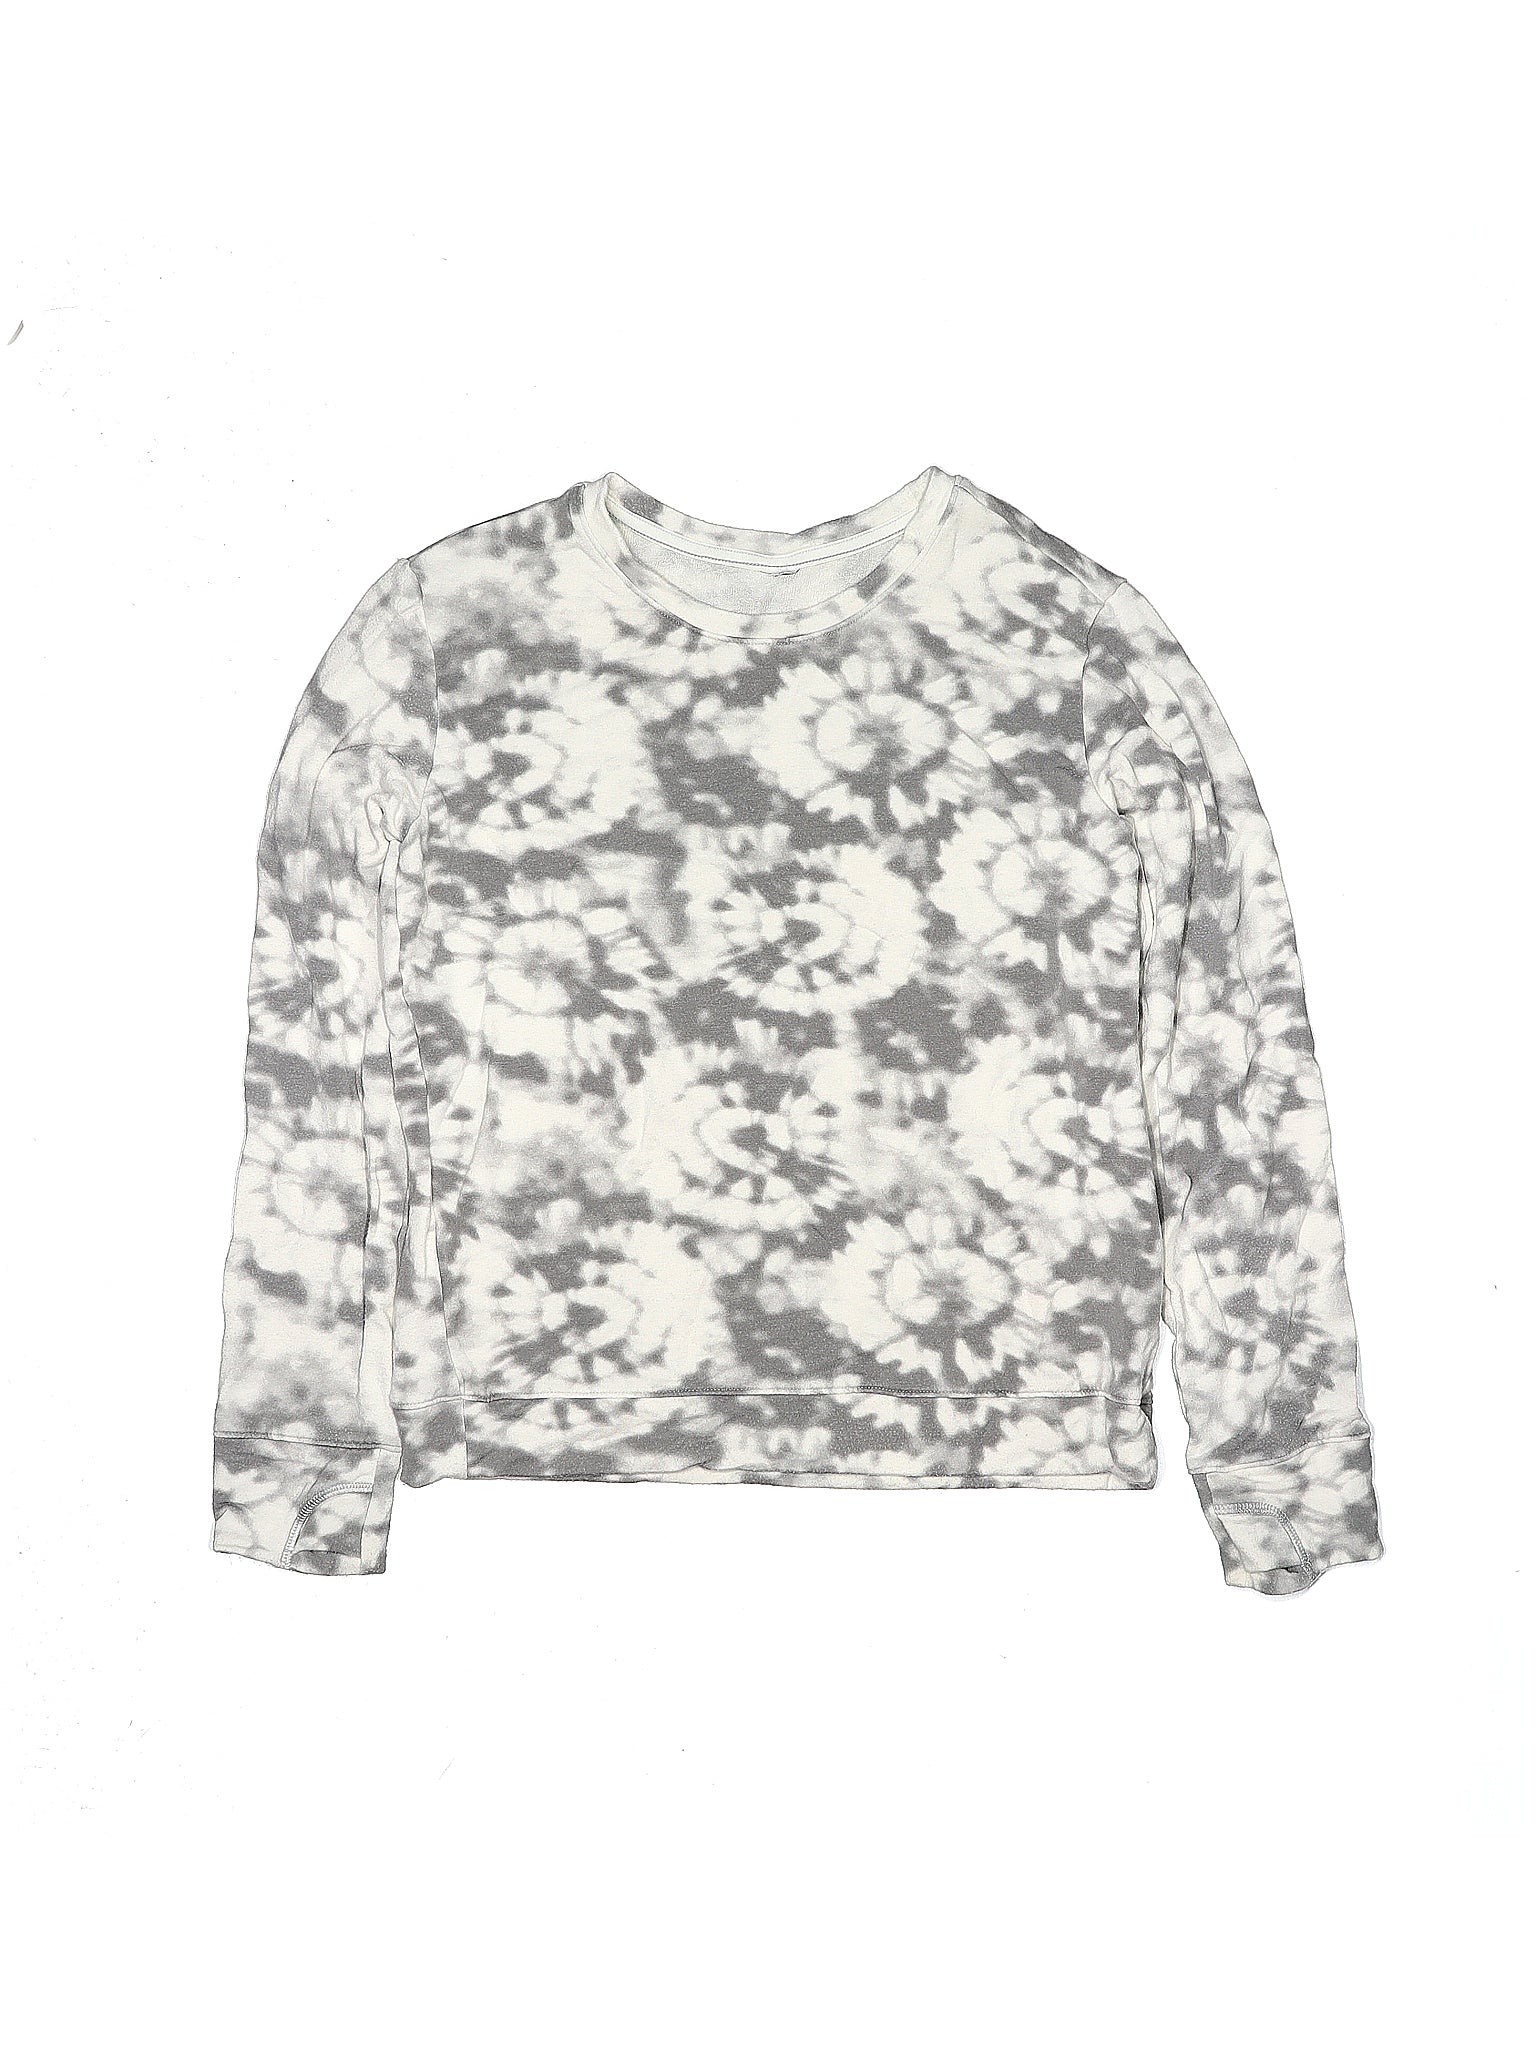 Sweatshirt size - 14